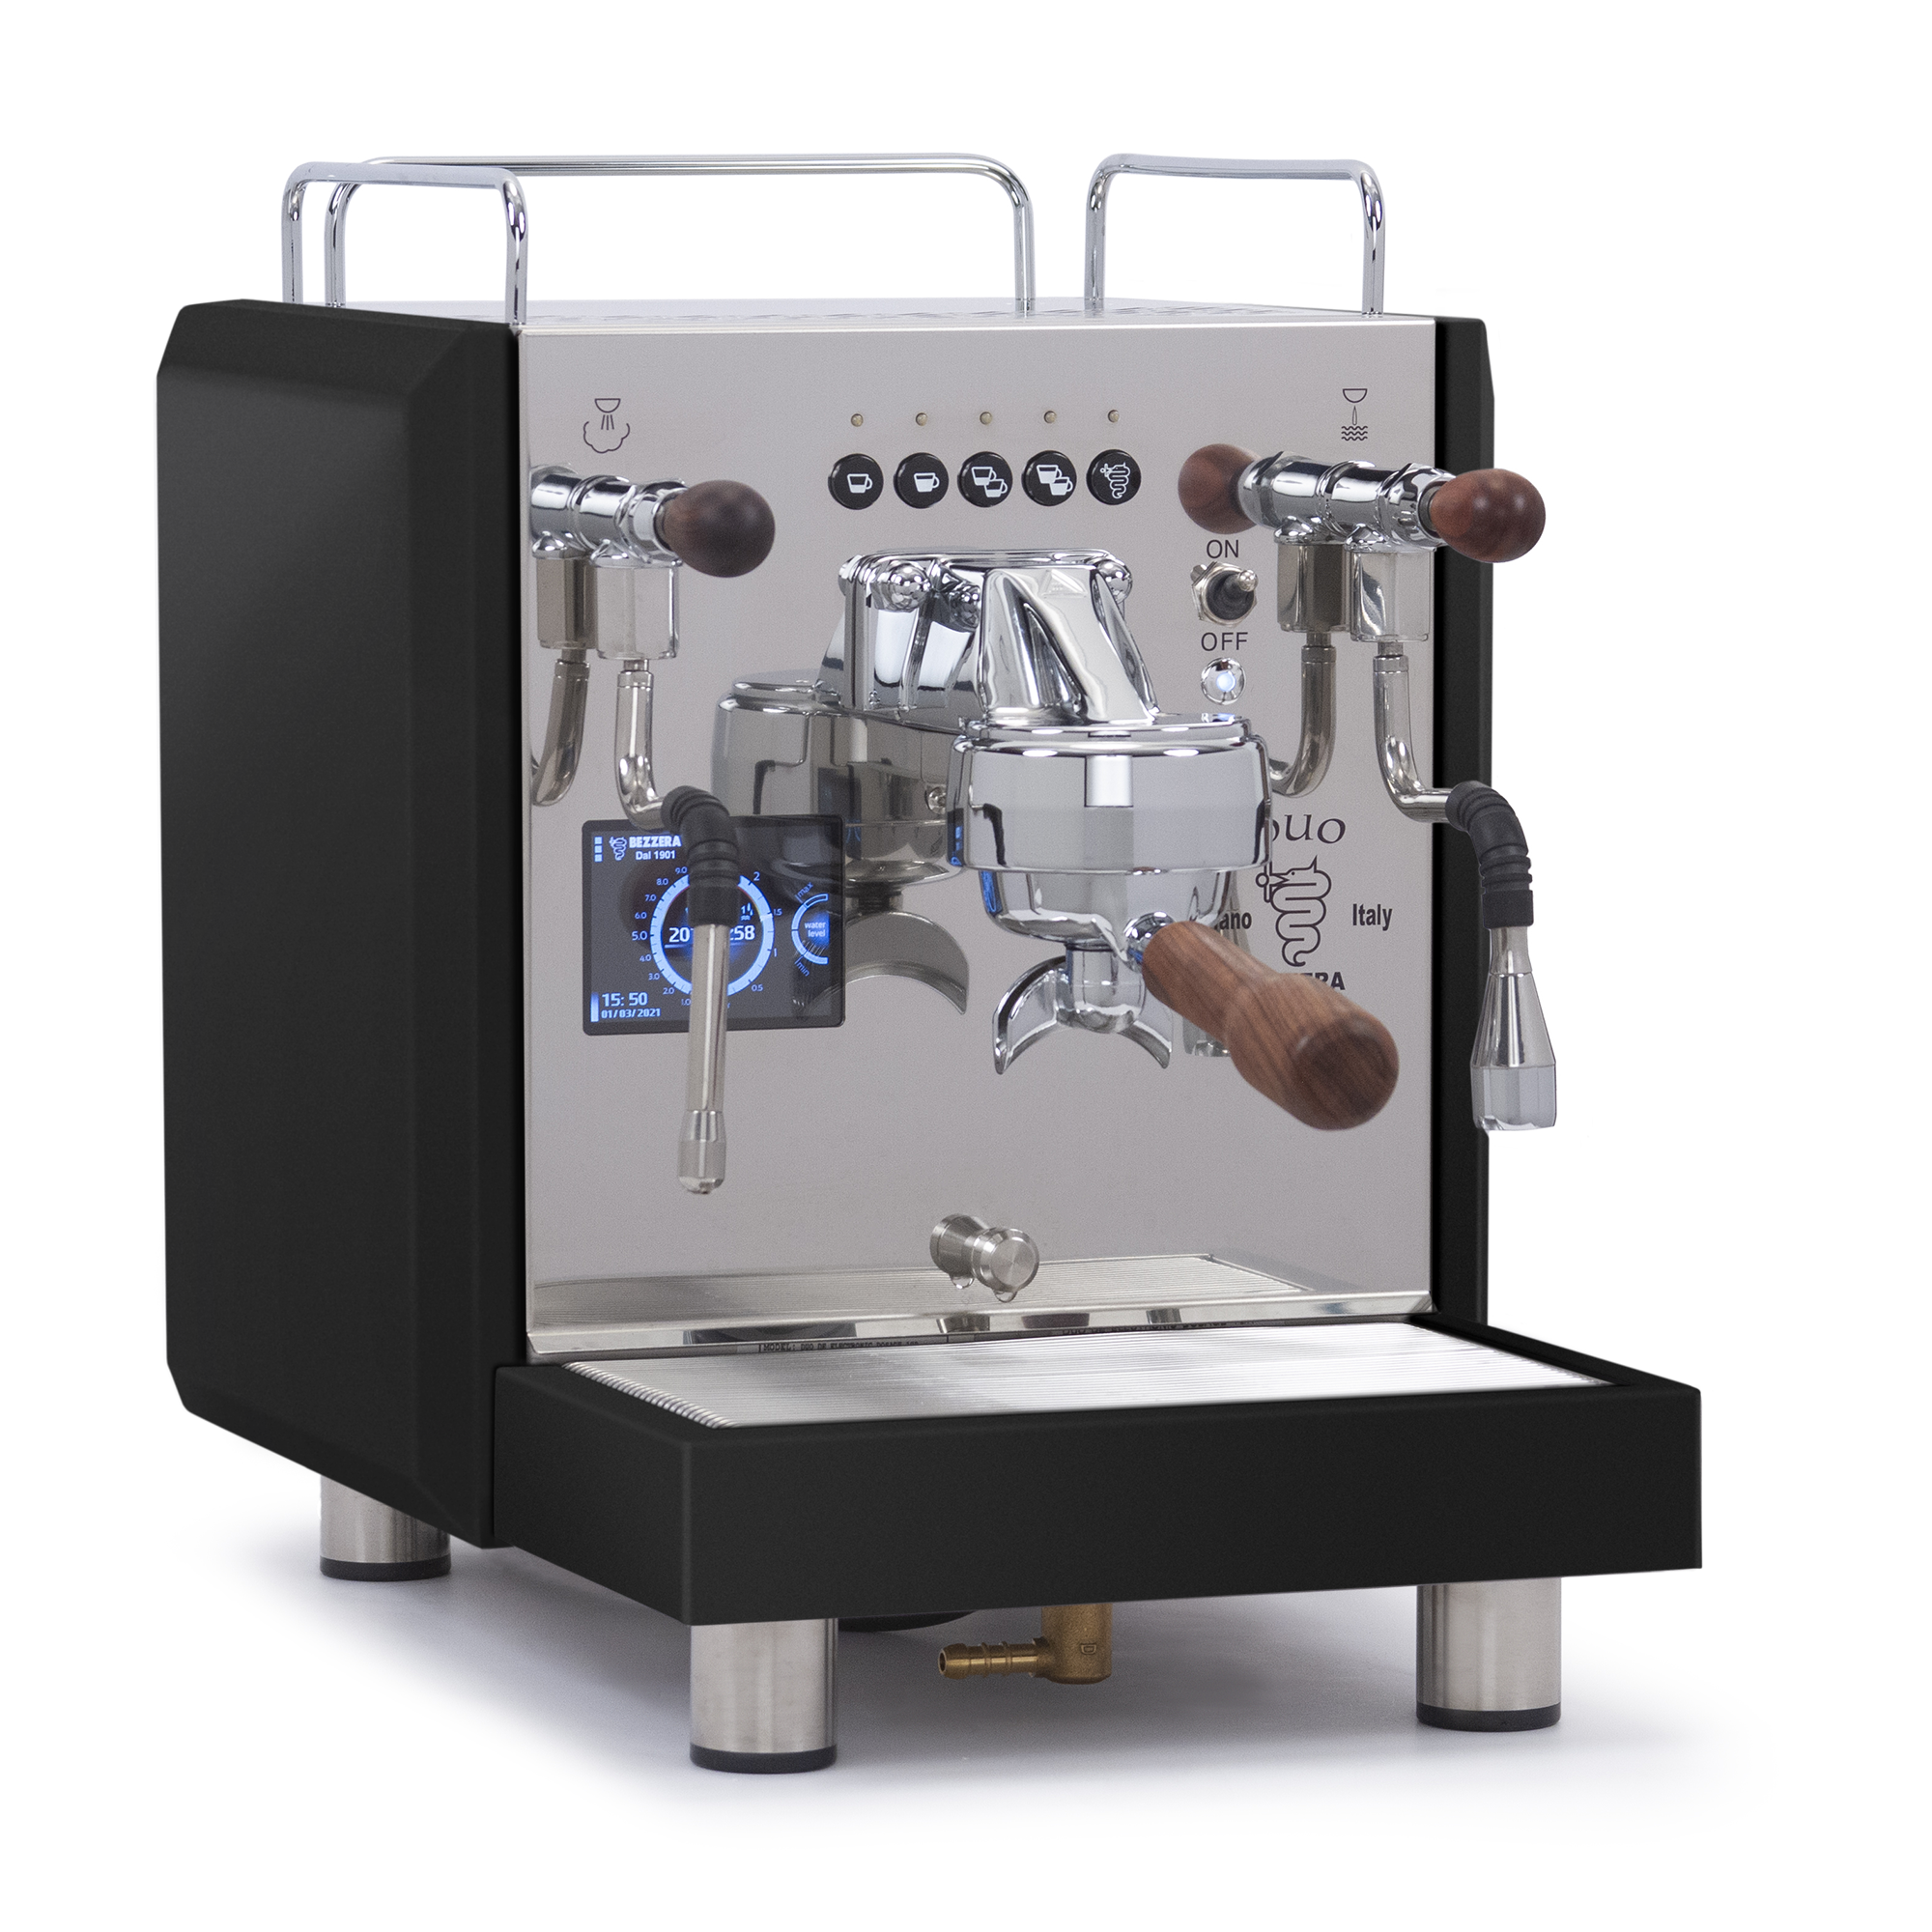 Keurig-Duo coffee maker 3D model